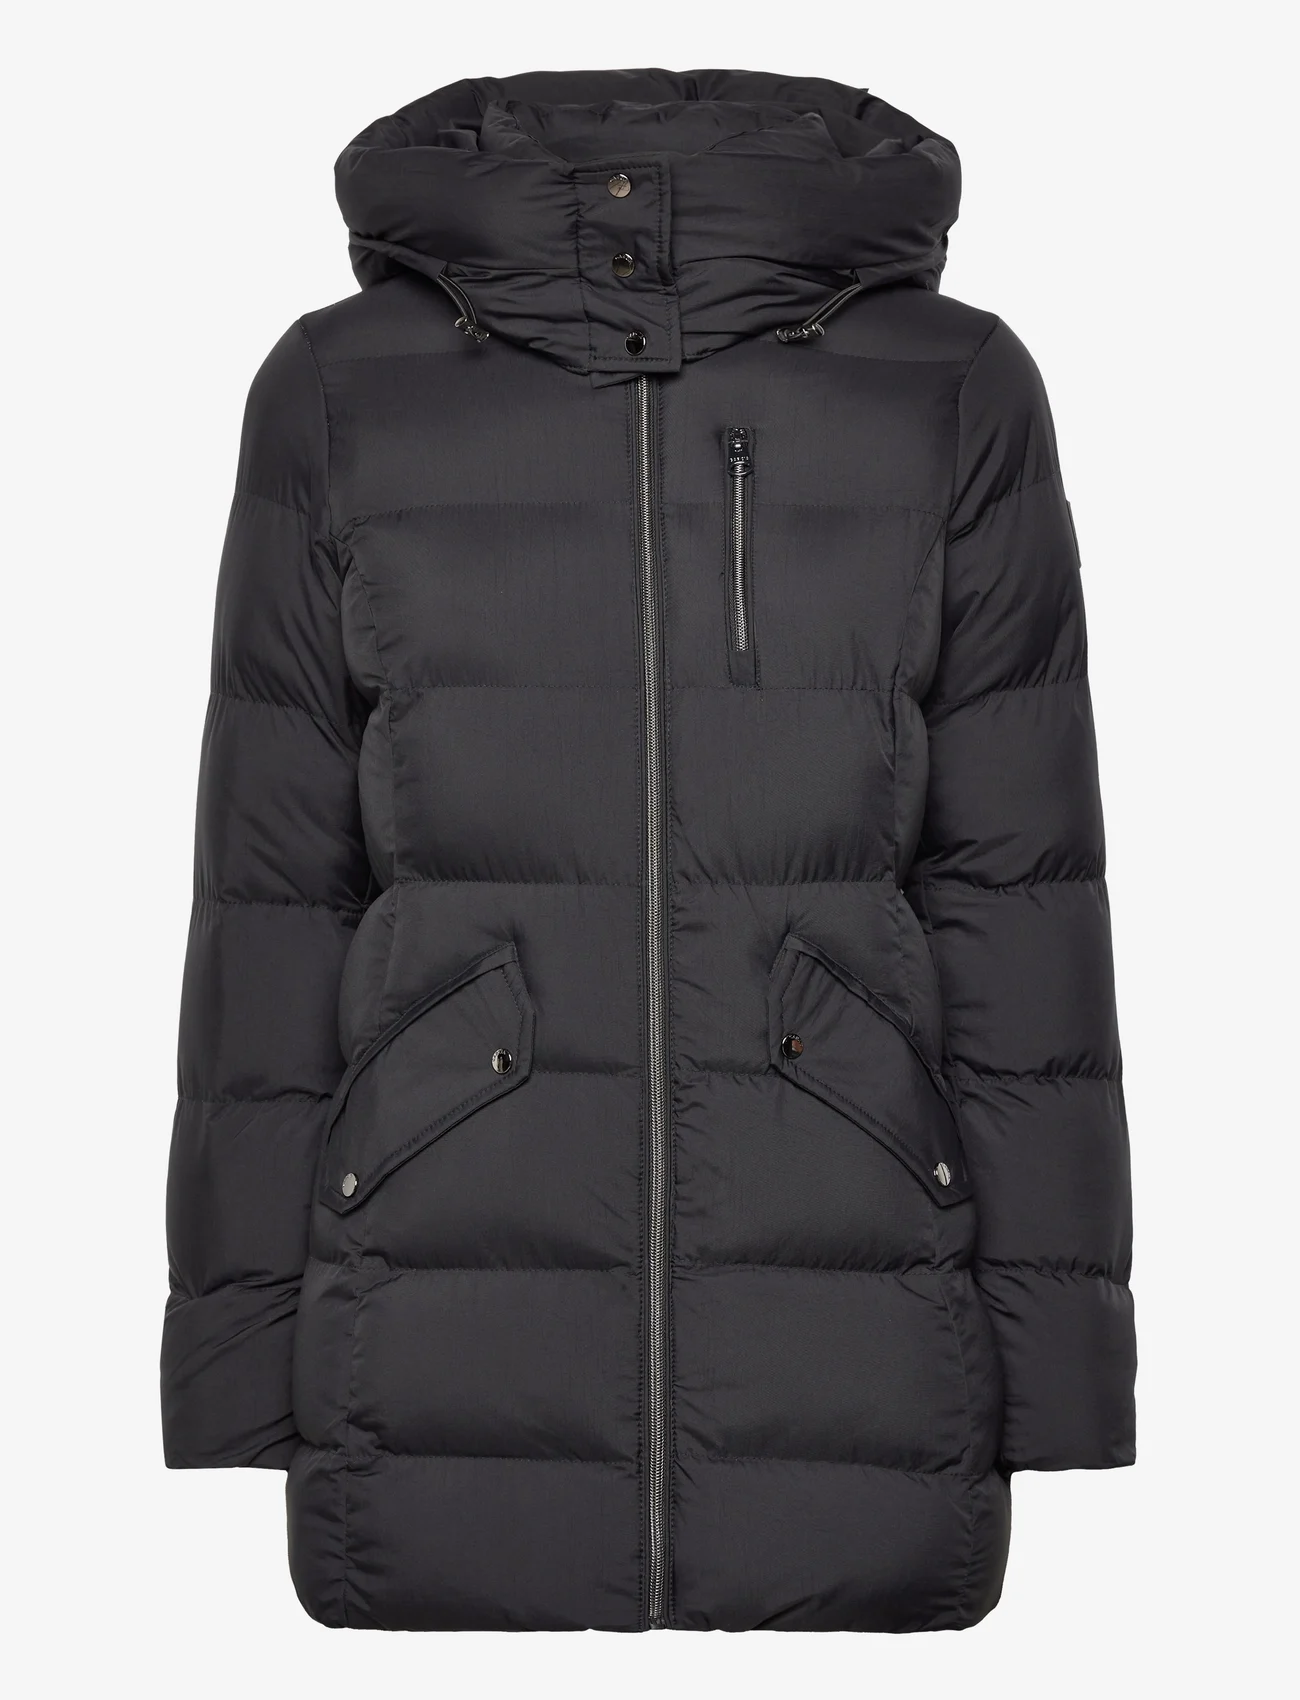 Garcia - ladies outdoor jacket - winterjassen - black - 0